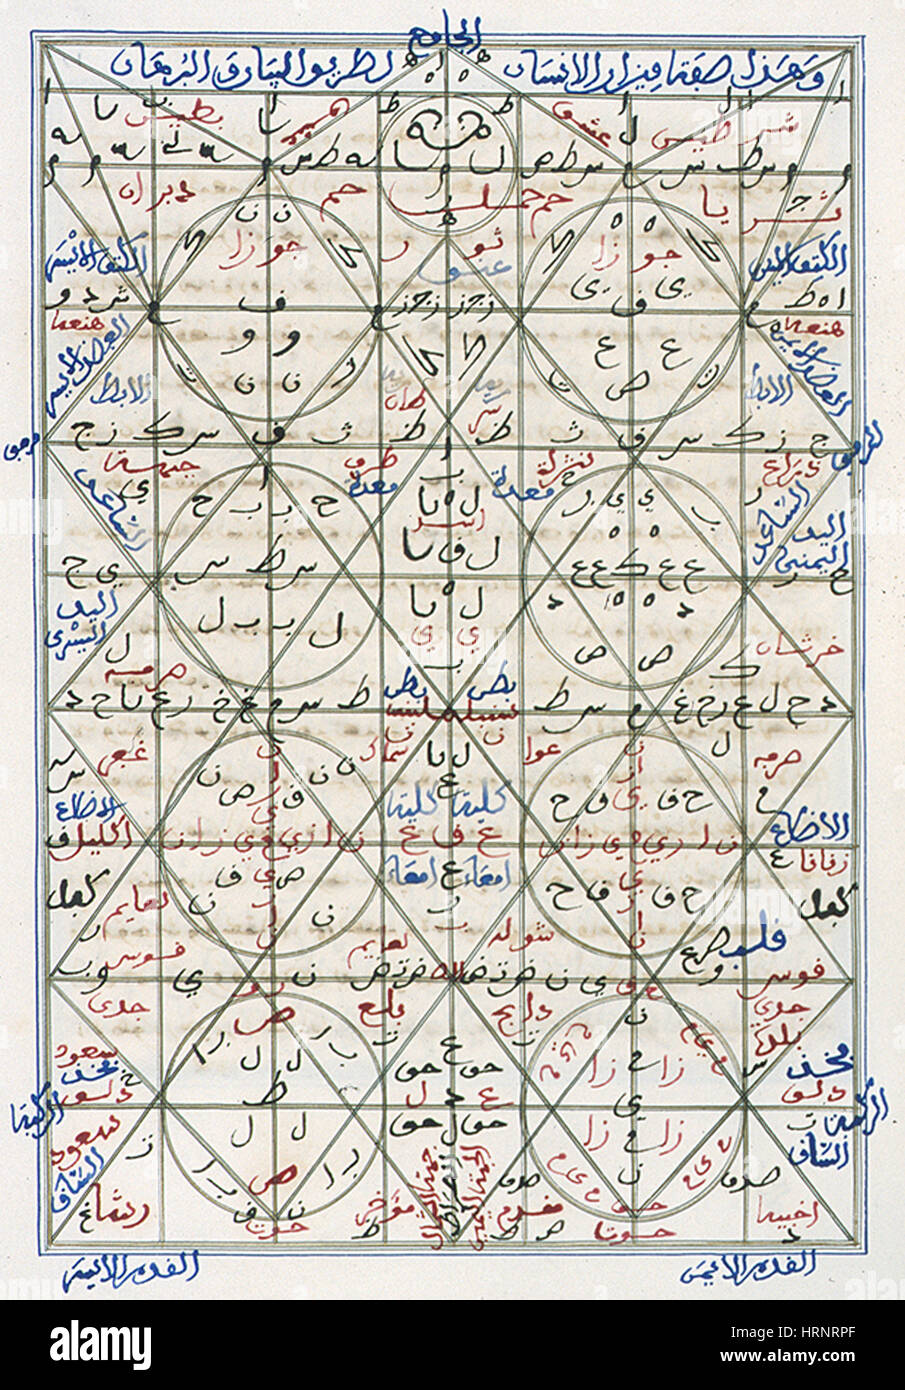 Manuscrit alchimie islamique, 14e siècle Banque D'Images